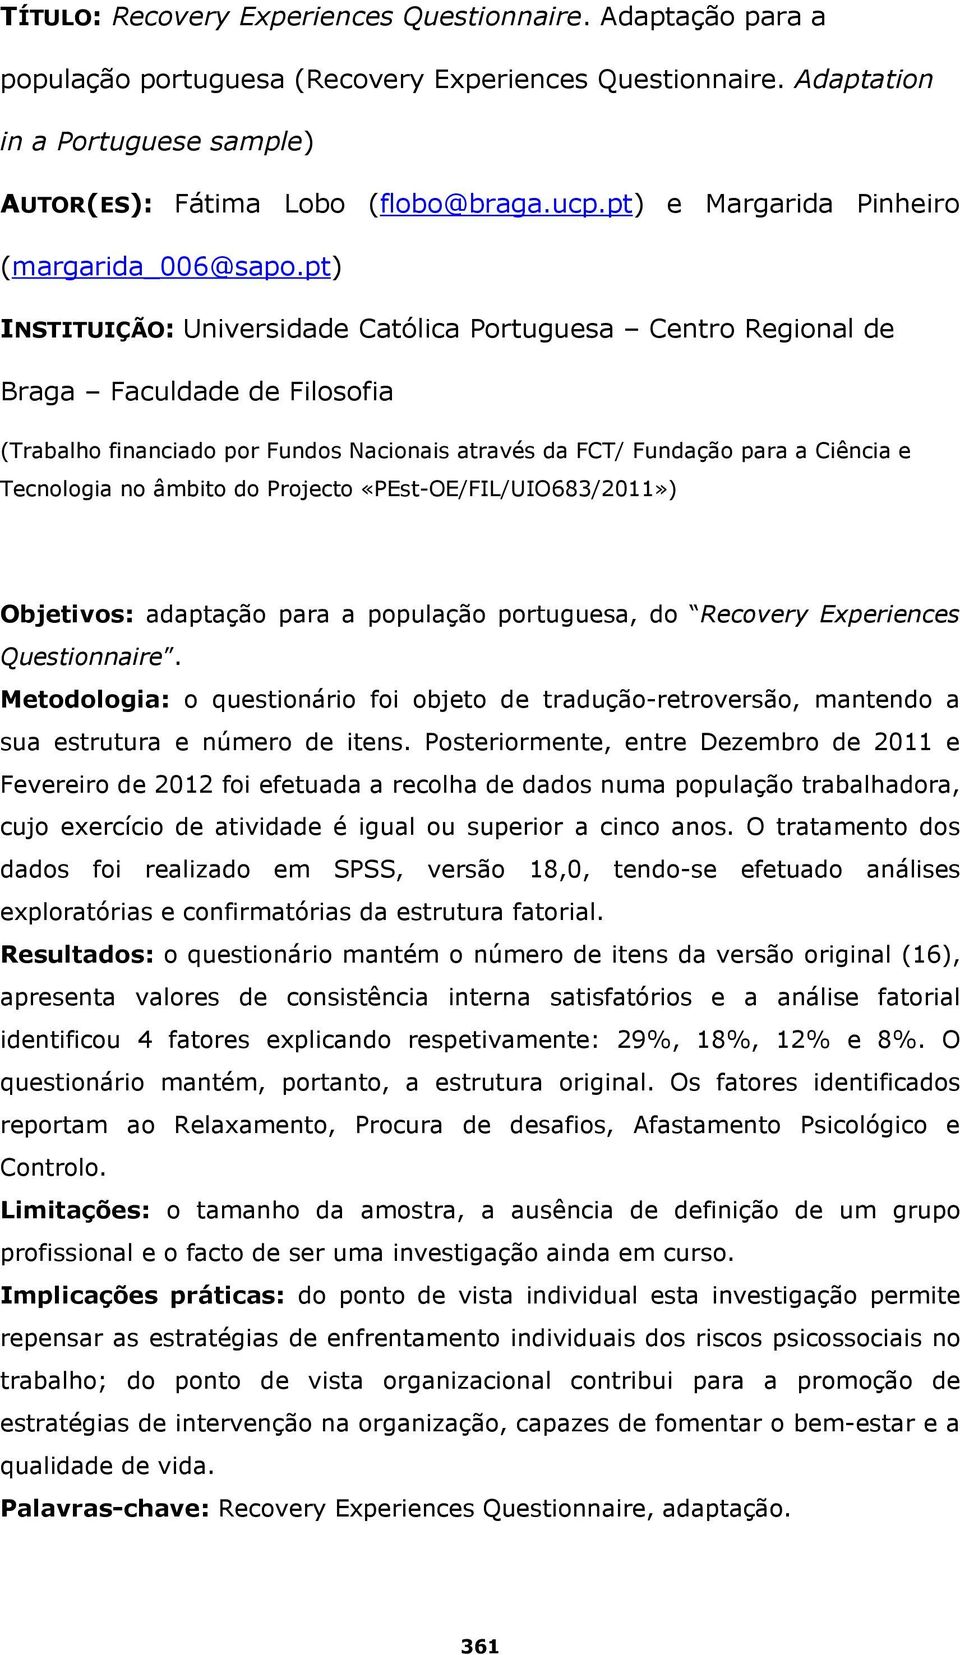 pt) INSTITUIÇÃO: Universidade Católica Portuguesa Centro Regional de Braga Faculdade de Filosofia (Trabalho financiado por Fundos Nacionais através da FCT/ Fundação para a Ciência e Tecnologia no